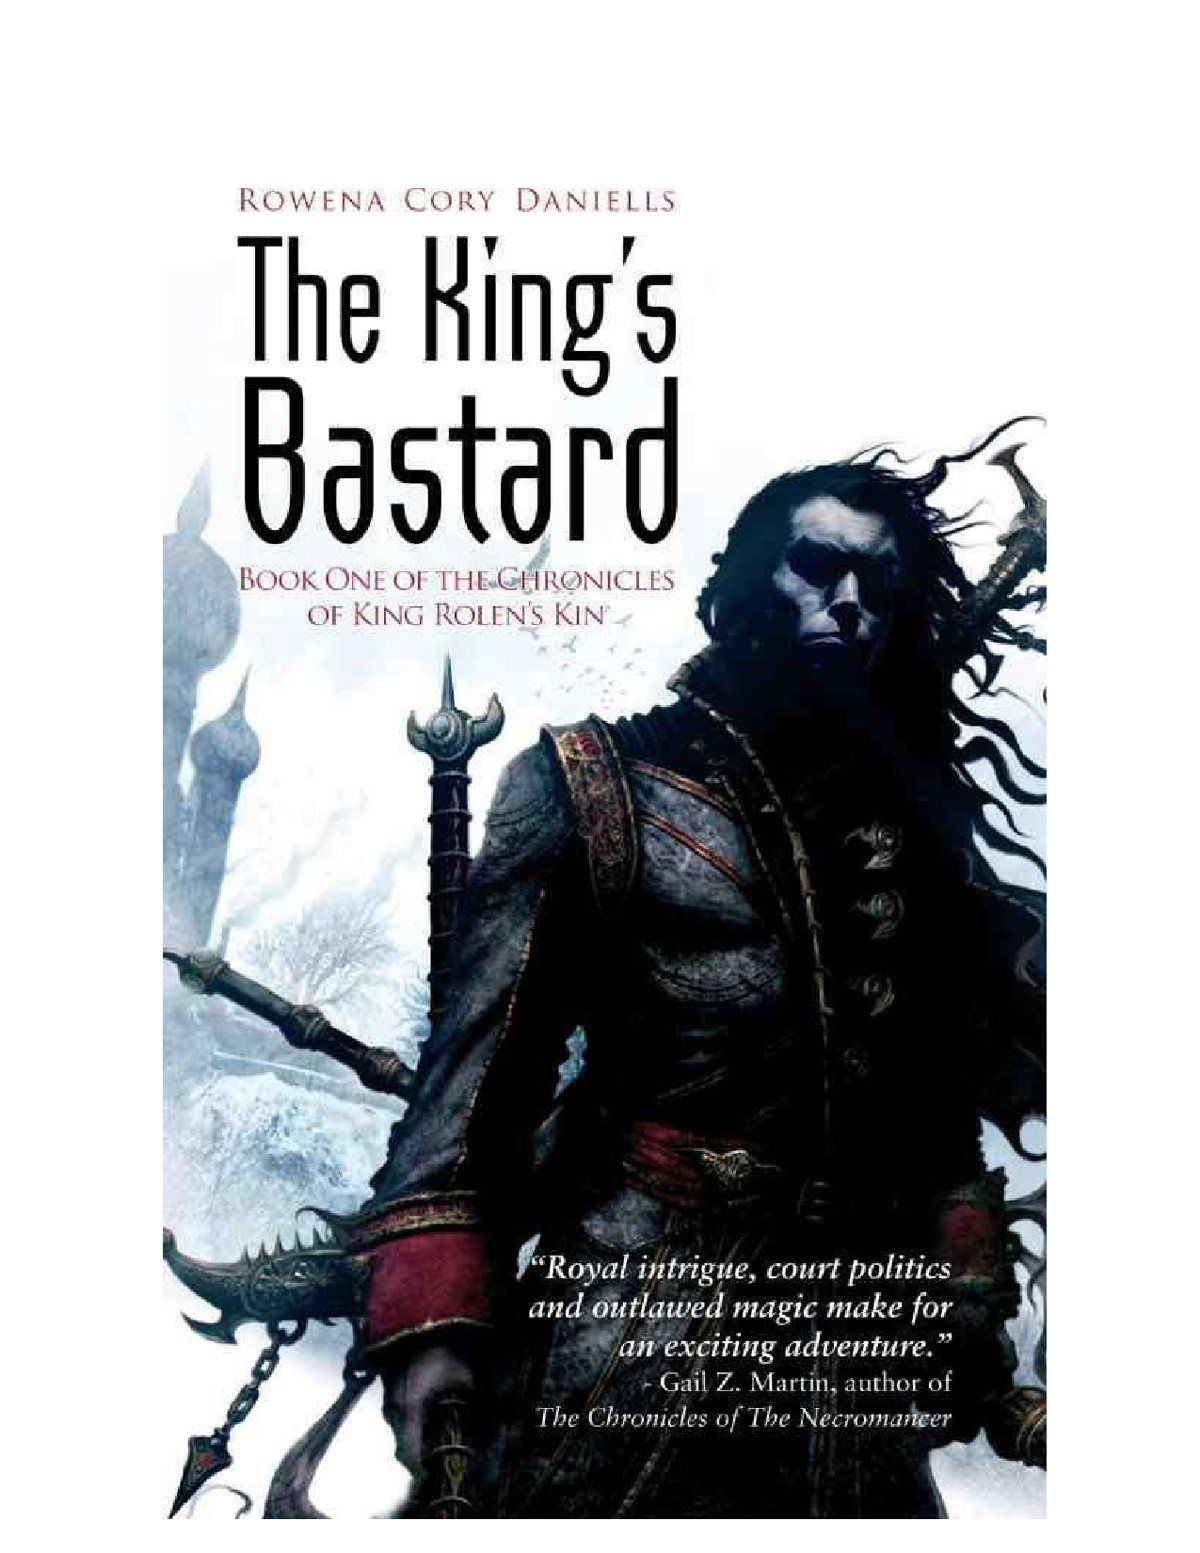 The King's Bastard